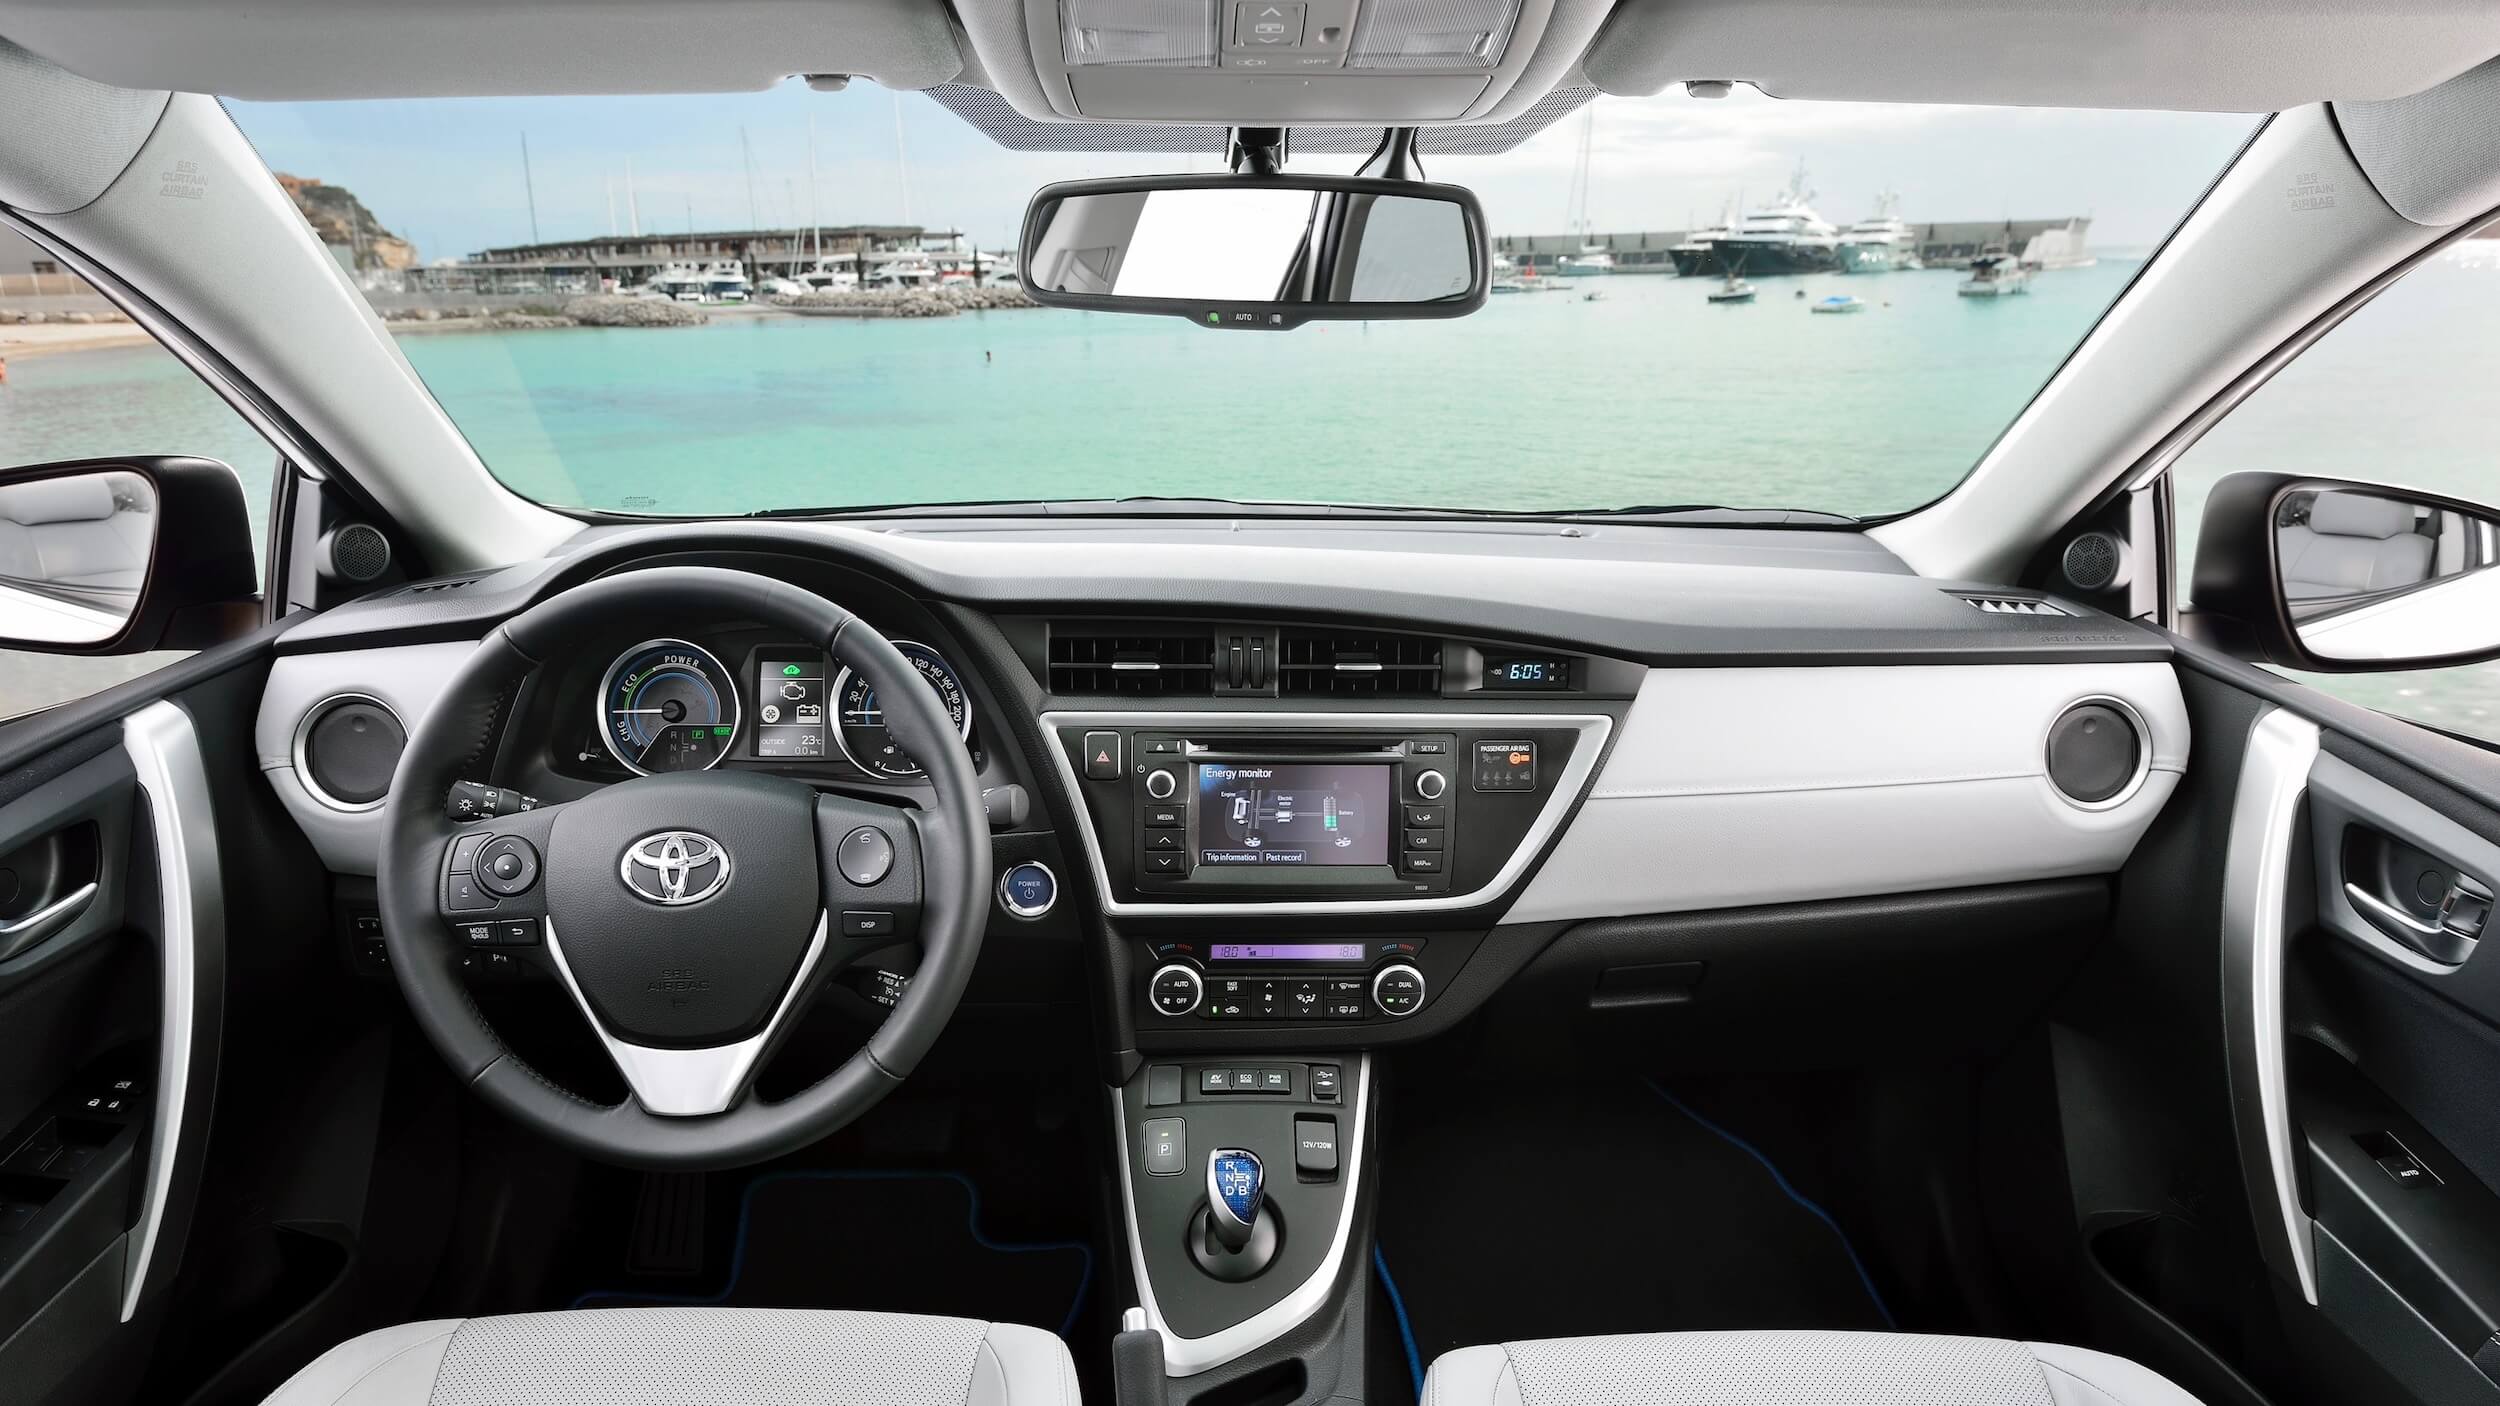 Toyota Auris interior